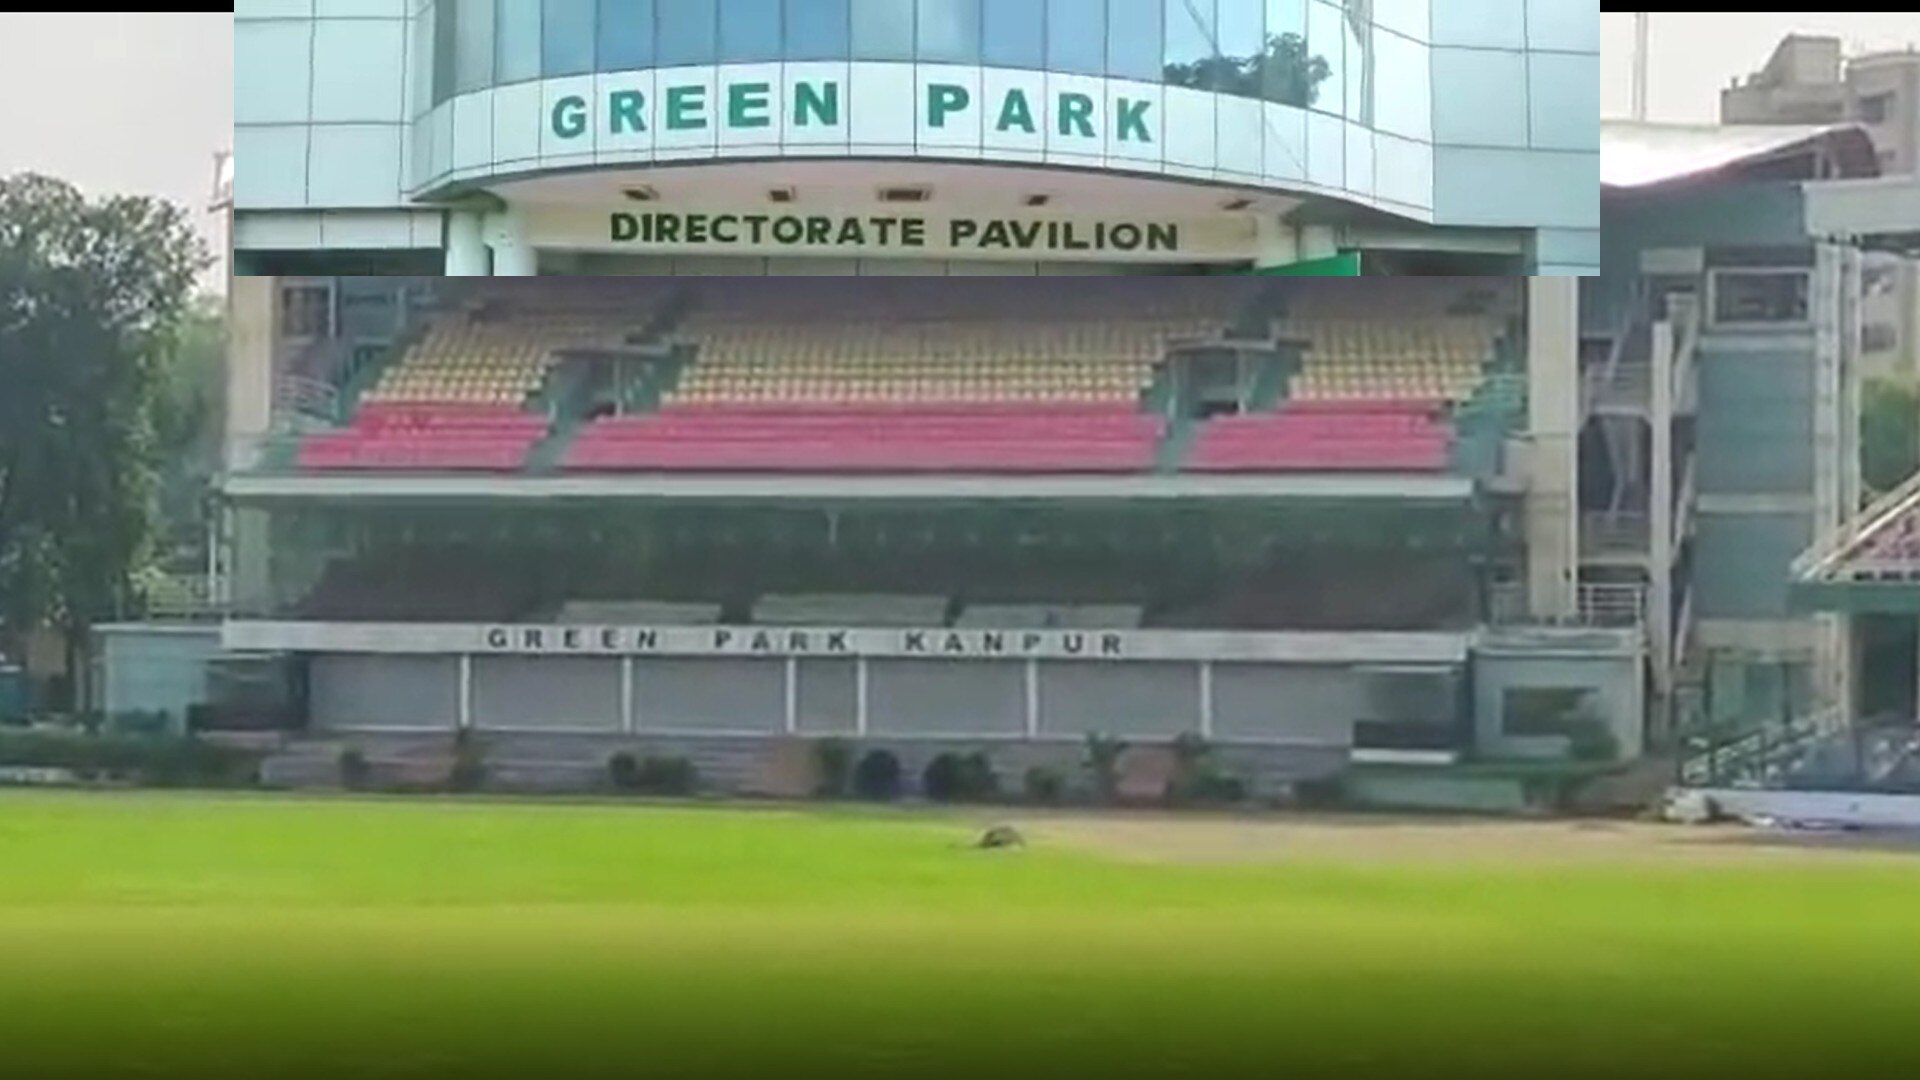 क्रिकेट फैंस के लिए खुशखबरी! कानपुर के ग्रीन पार्क में होगी चौके-छक्कों की बरसात, तीन साल बाद 4 घरेलू मैचों की मिली मेजबानी